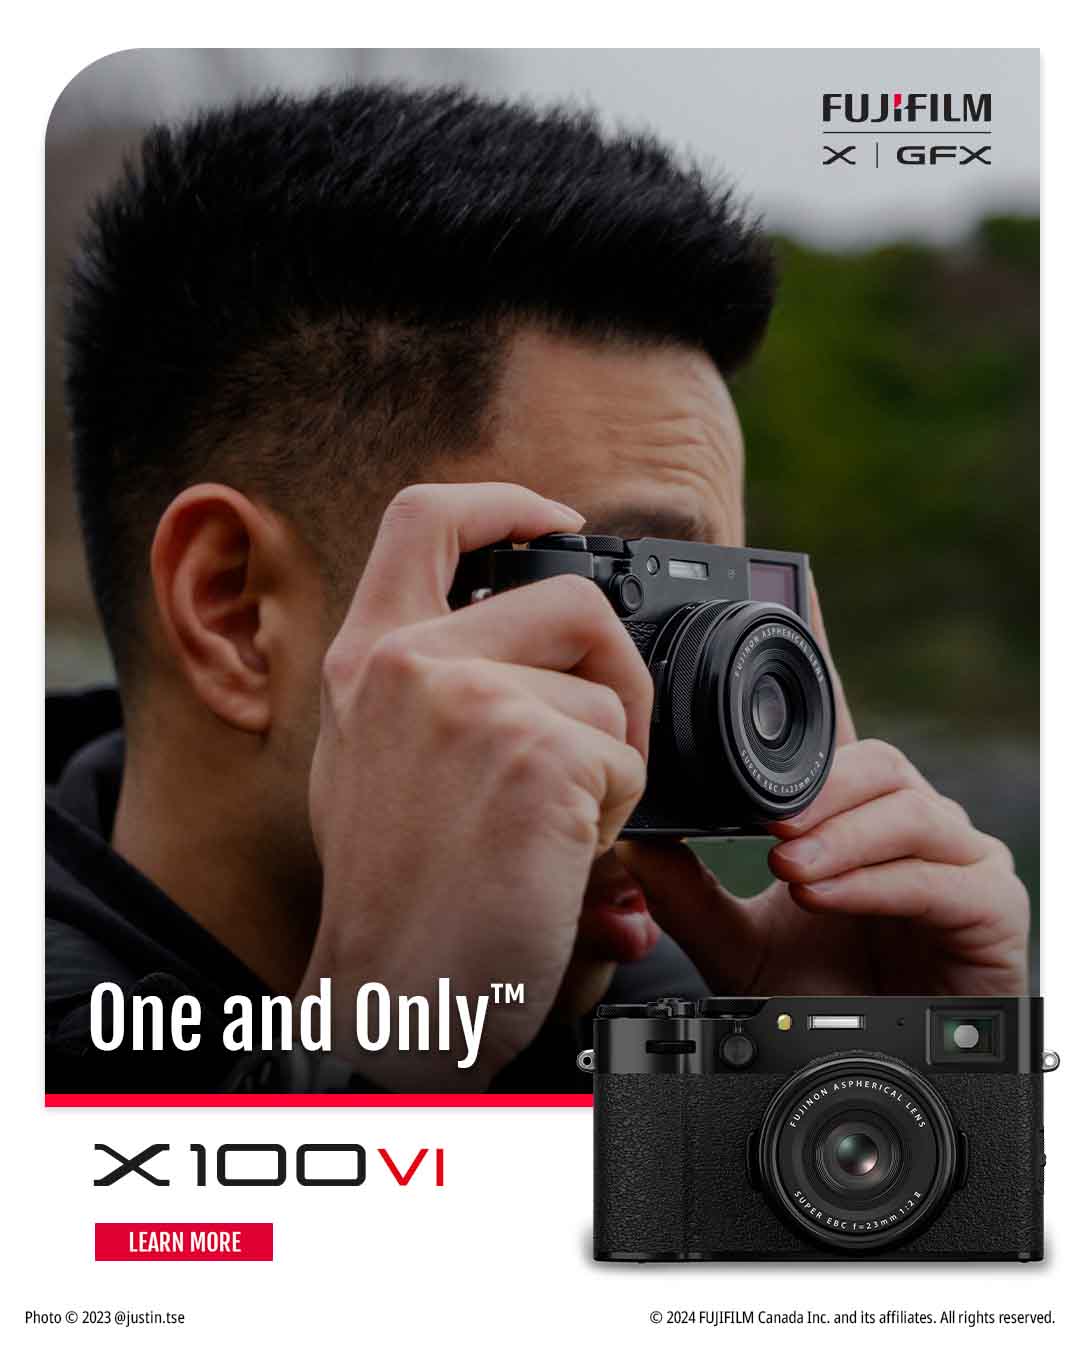 Pre-Order the NEW Fujifilm X100VI Compact Camera